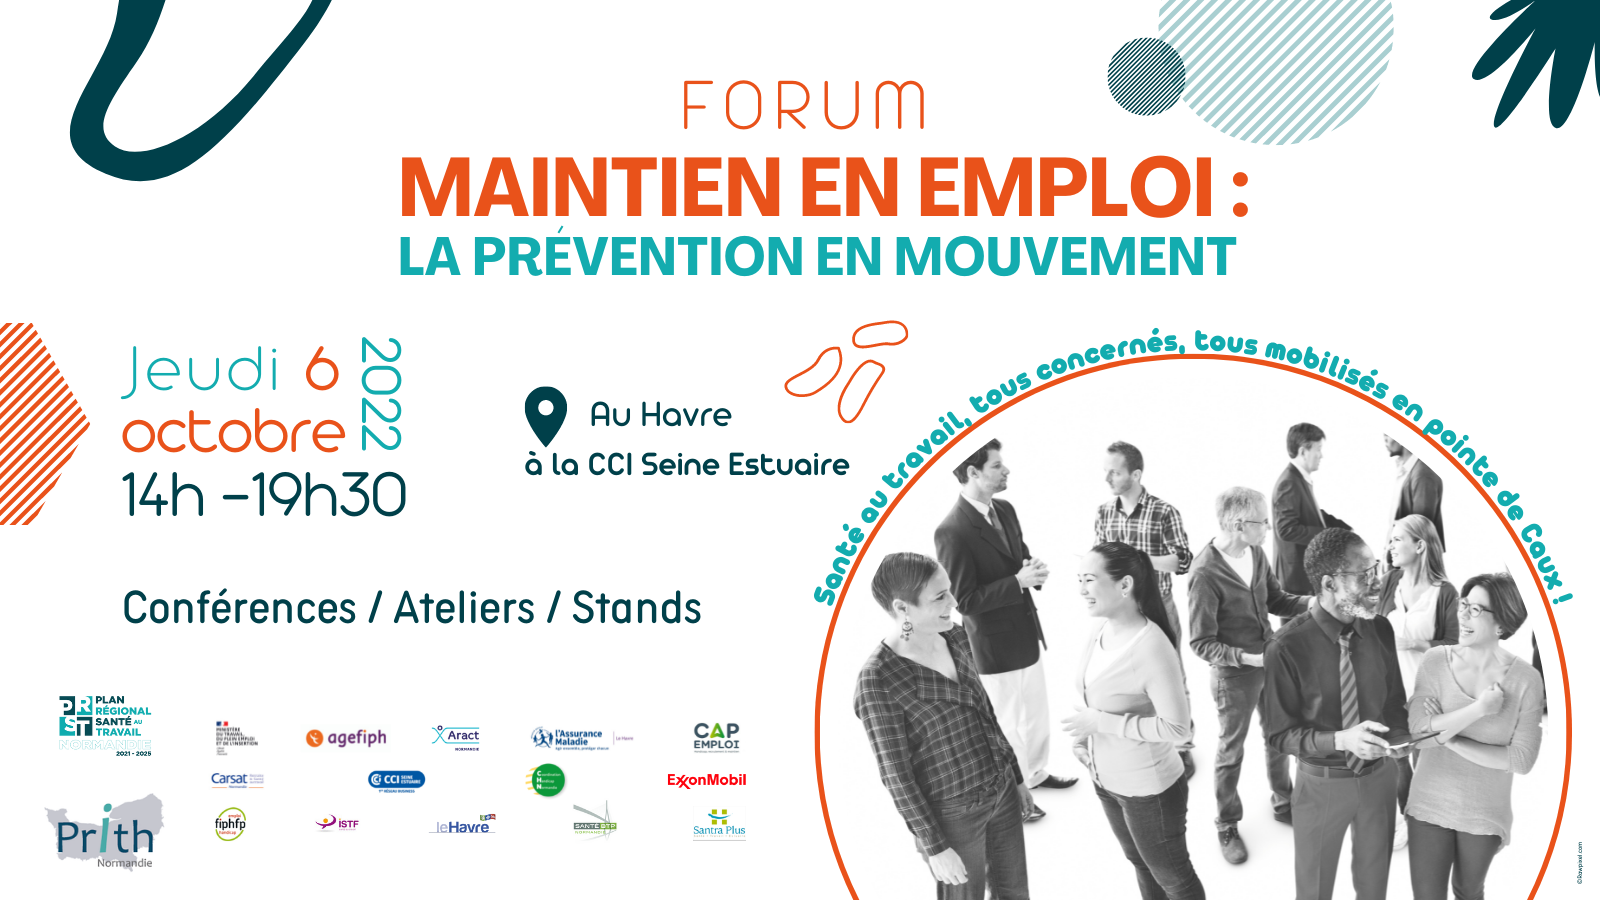 Forum Maintien en emploi - la prévention en mouvement du 6 octobre 2O22 au Havre